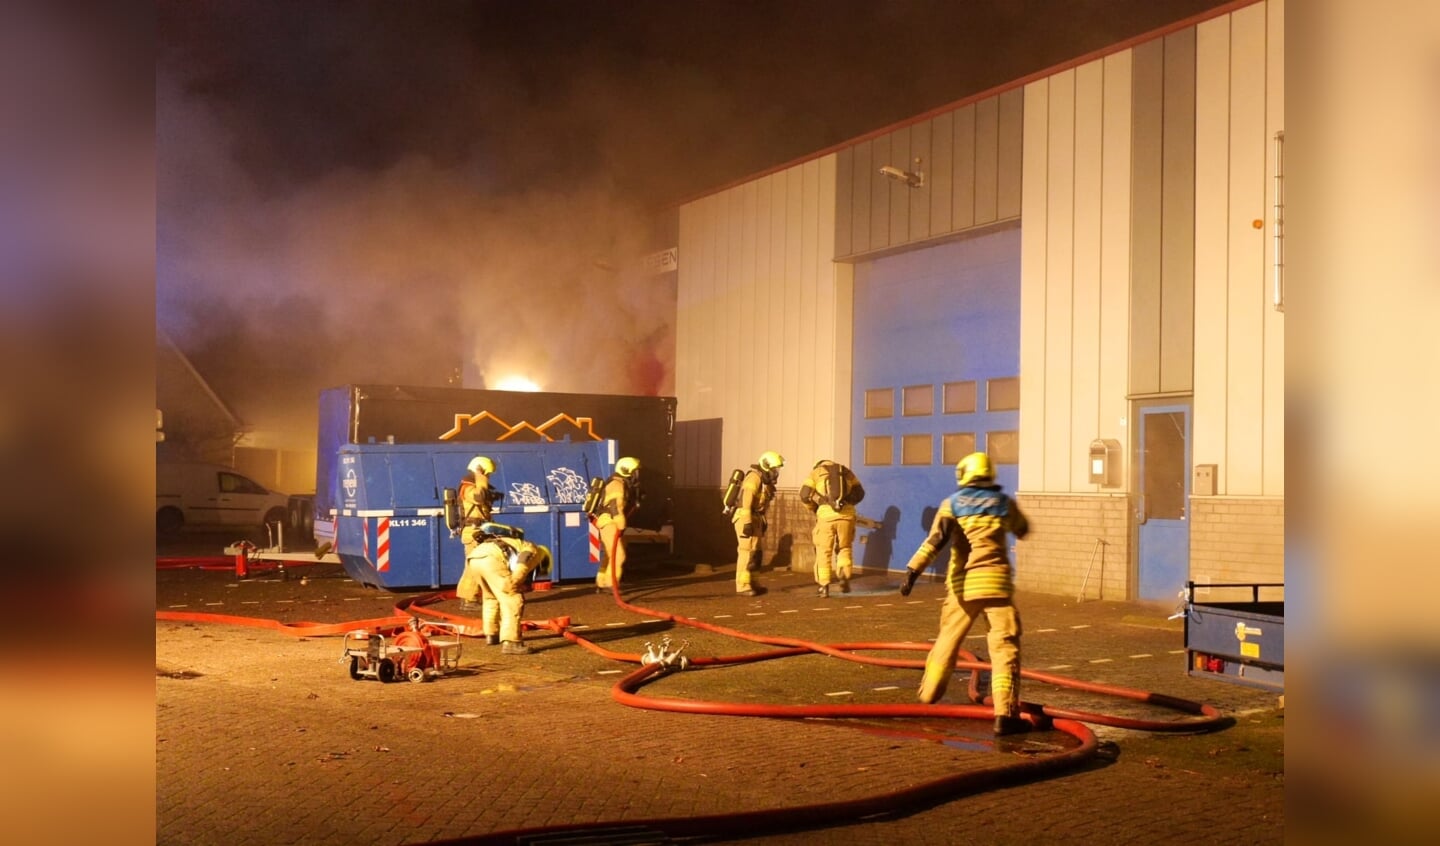 De eerste dag van het nieuwe jaar wordt Hardinxveld opgeschrikt door een grote brand. 